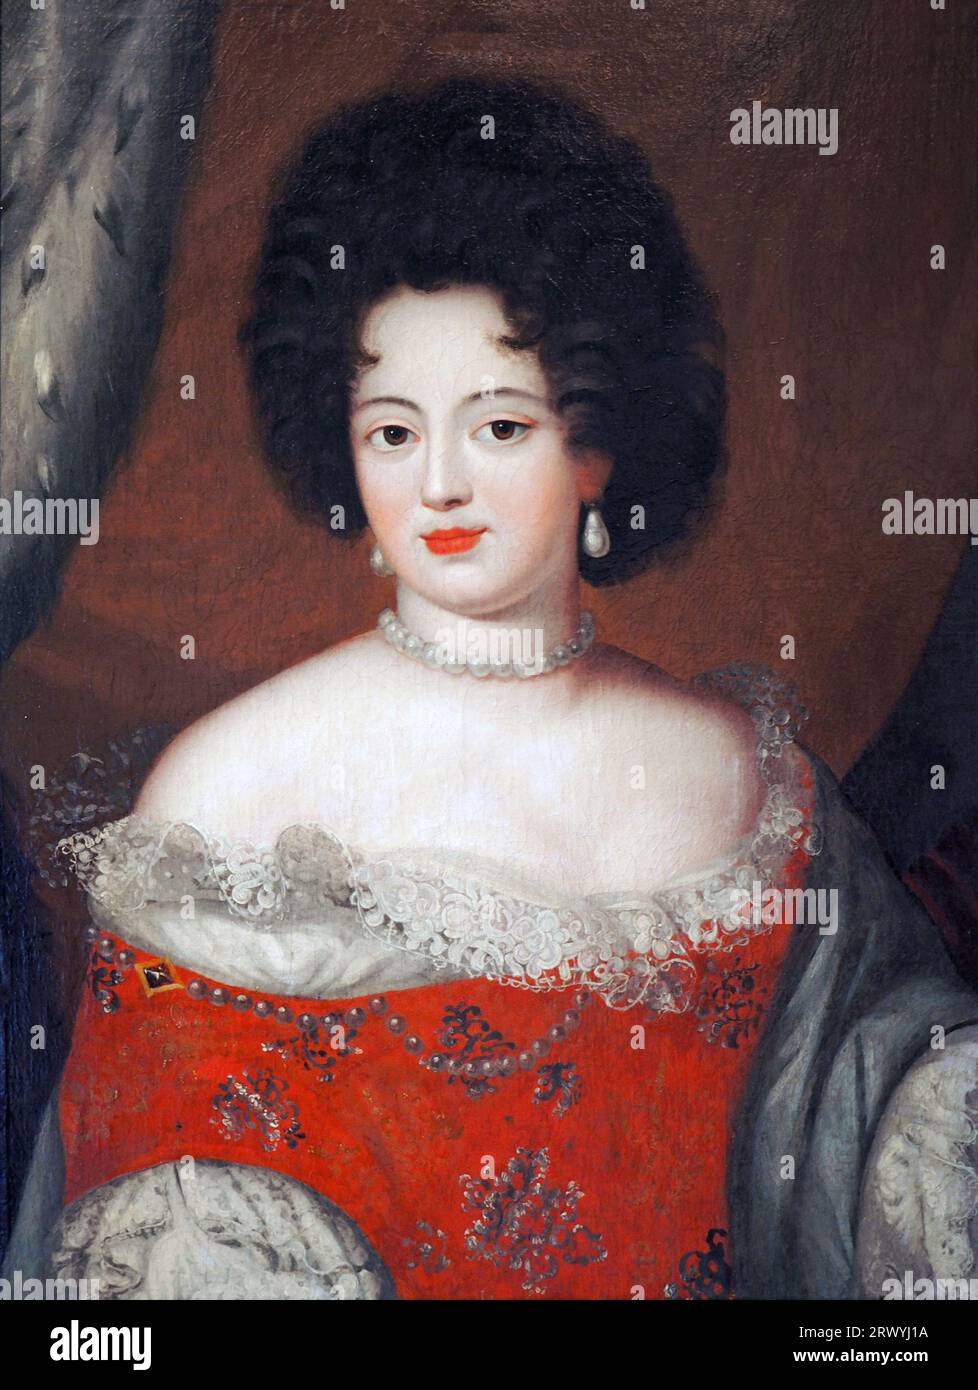 Sofía Dorotea de Celle (1666-1726), esposa de Jorge I de Gran Bretaña Sofía Dorotea de Brunswick-Lüneburg-Celle Foto de stock